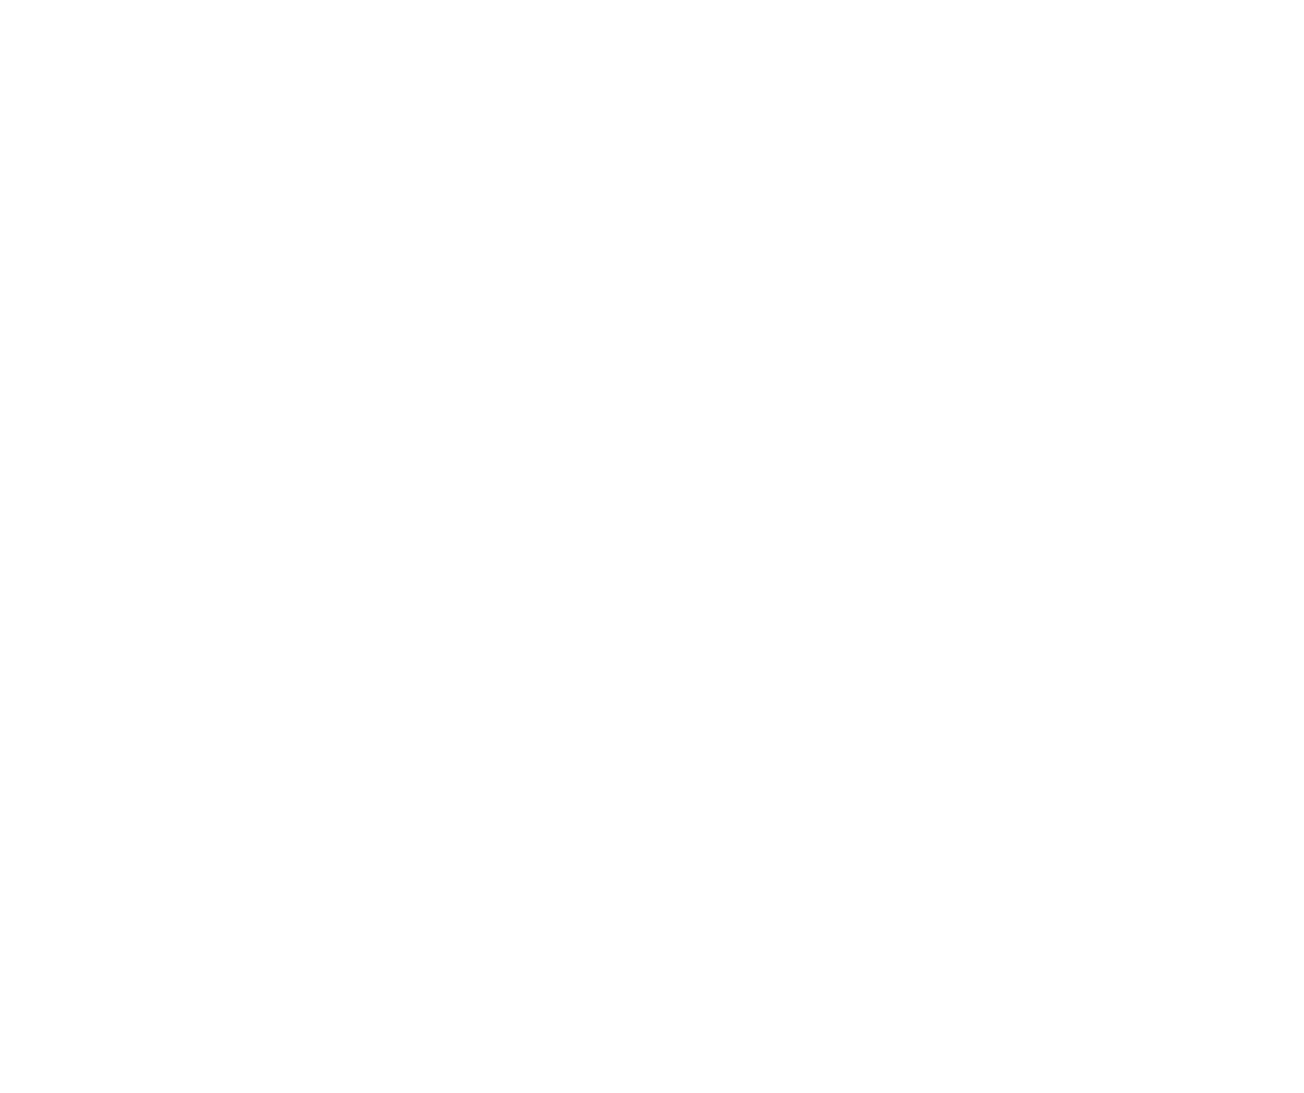 『筒美京平SONG BOOK』SPECIAL SITE